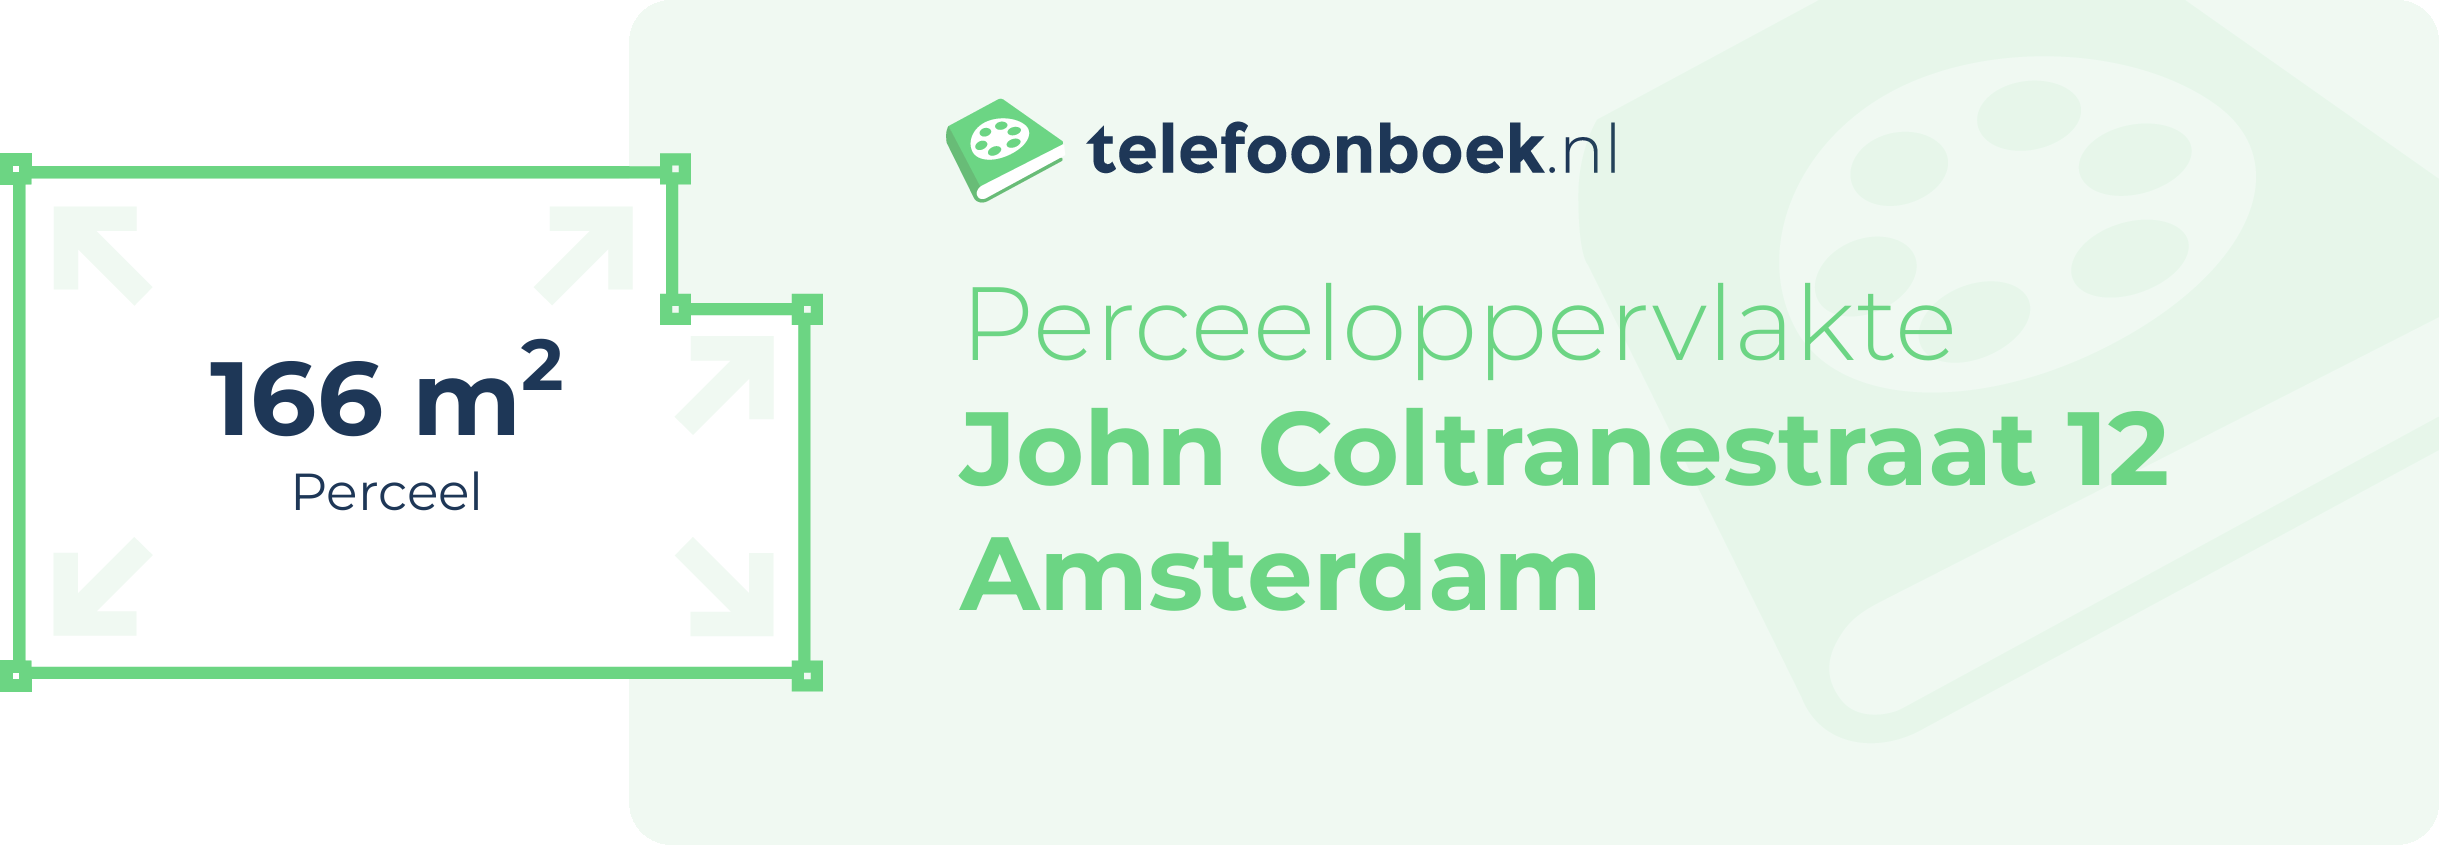 Perceeloppervlakte John Coltranestraat 12 Amsterdam